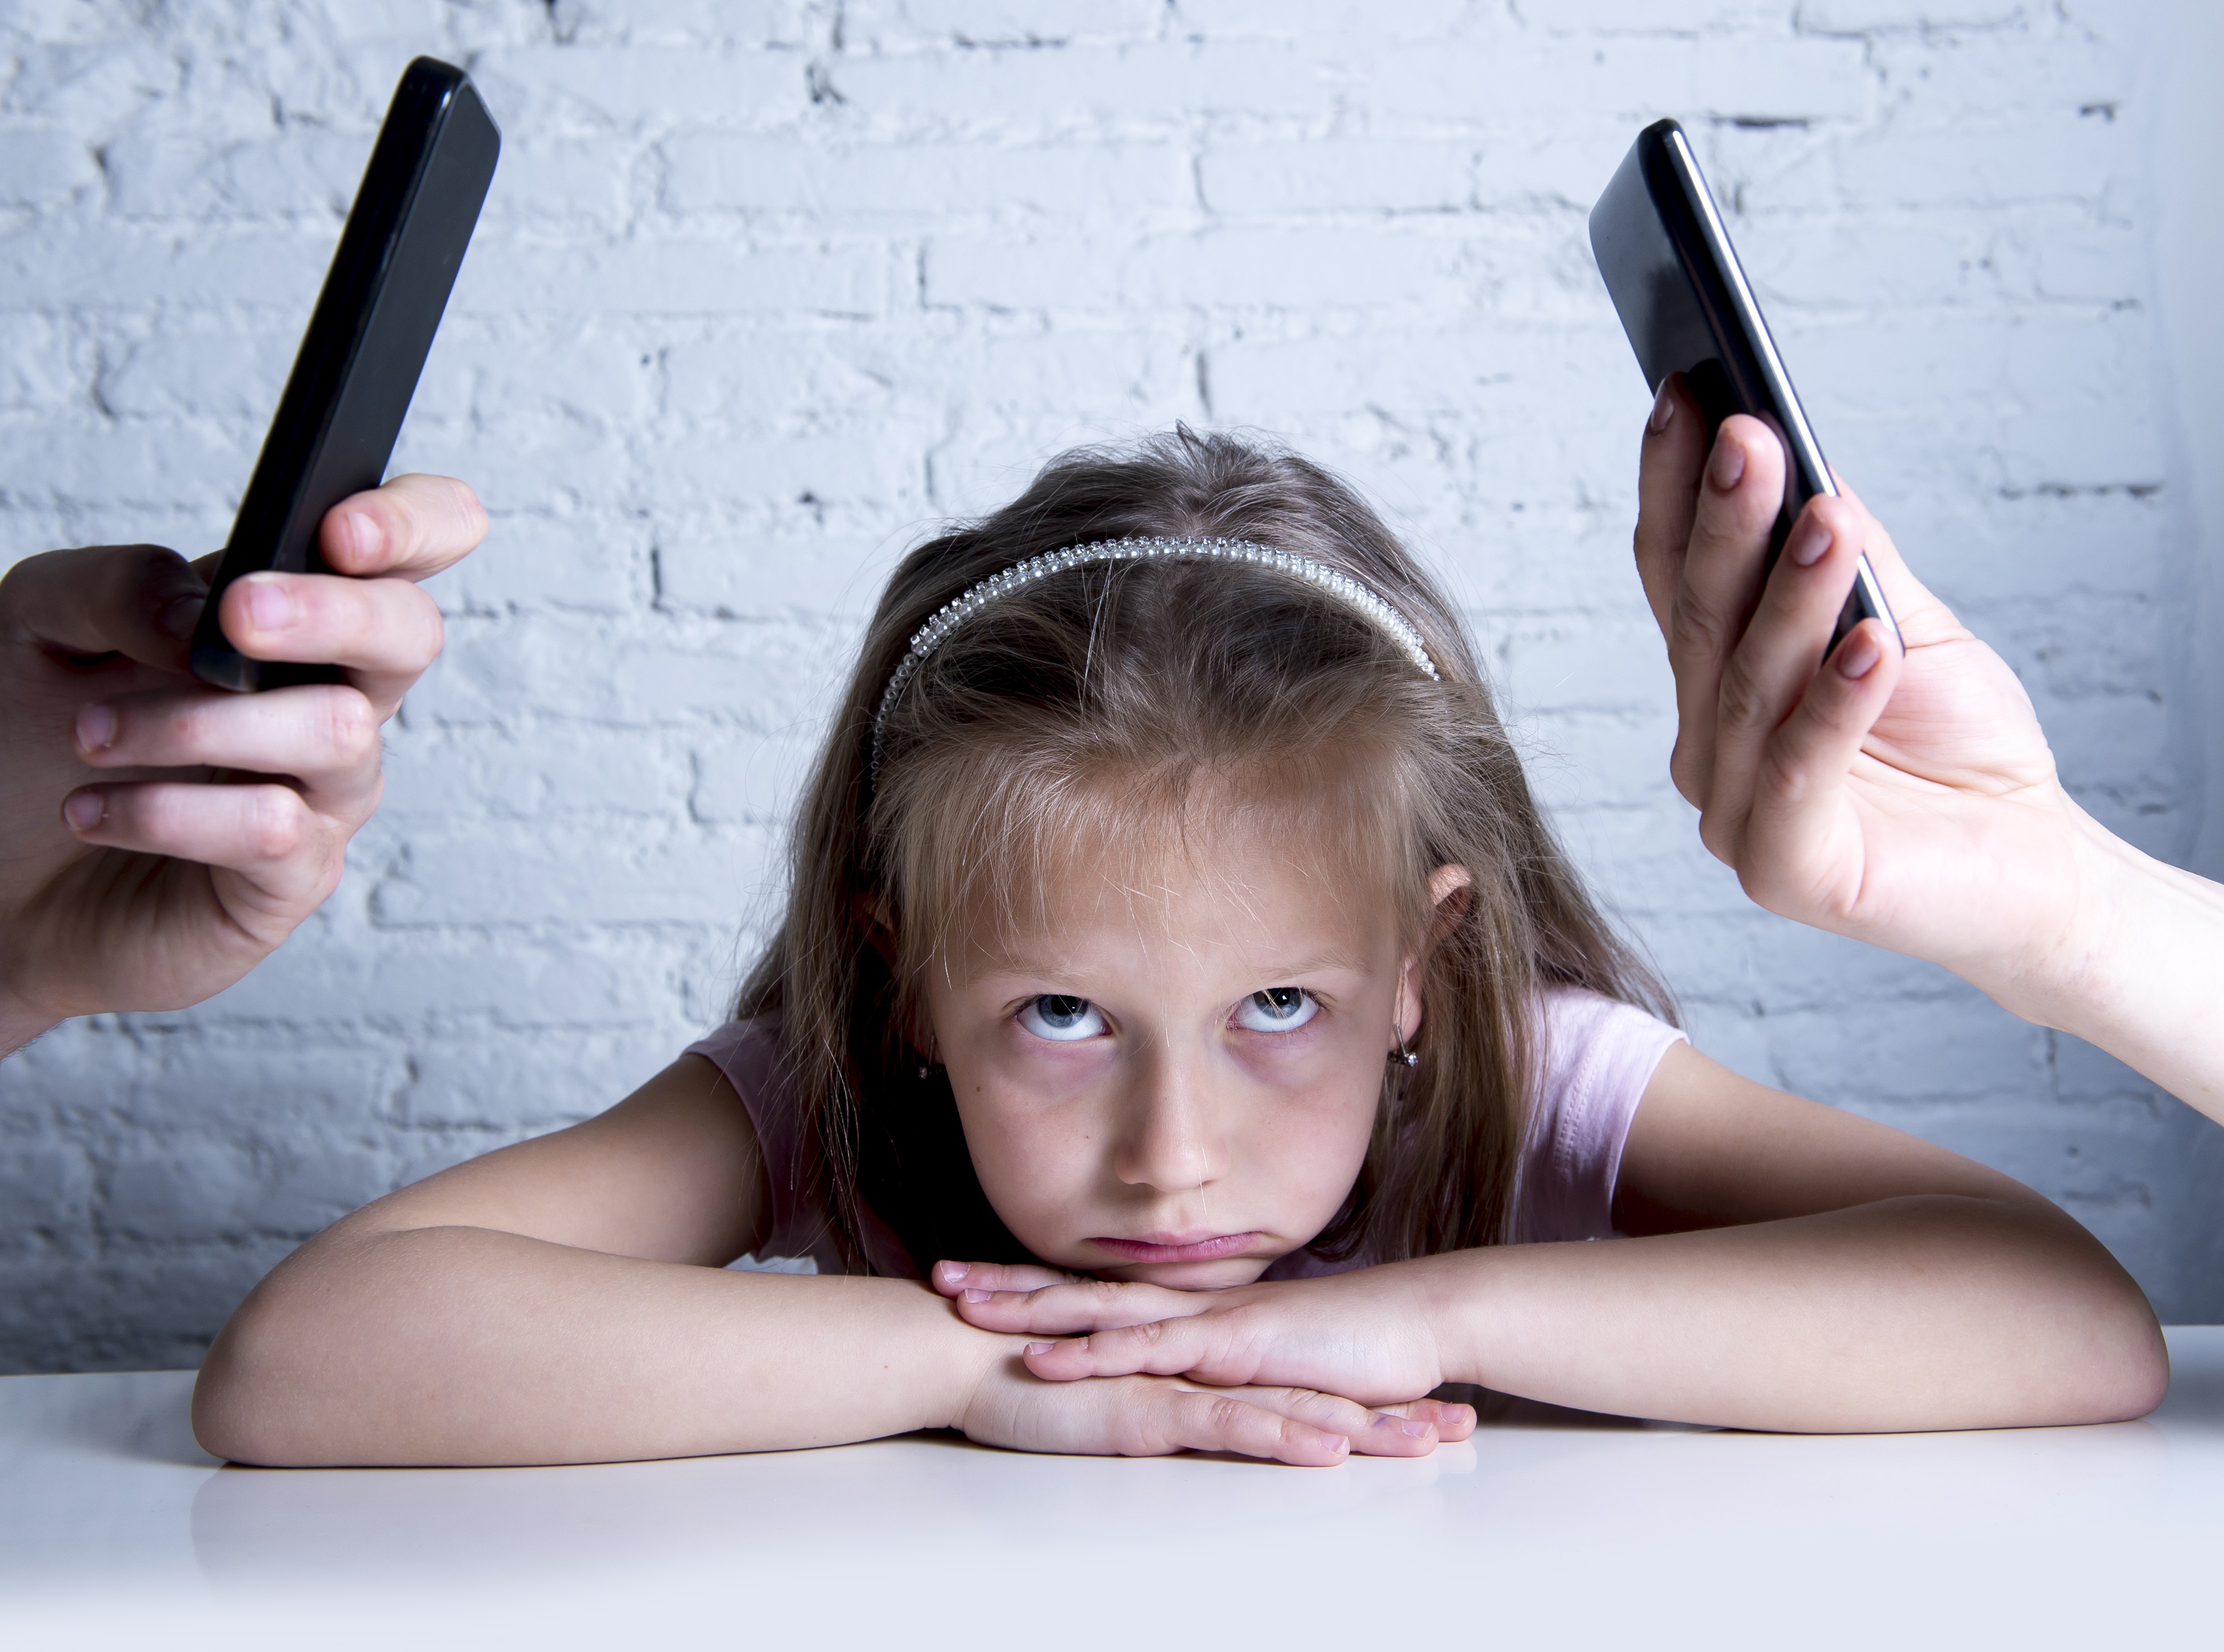 Em atividade da escola, crianças dos Estados Unidos reclamaram que os pais passam tempo demais em frente à tela do celular (Foto: Thinkstock)